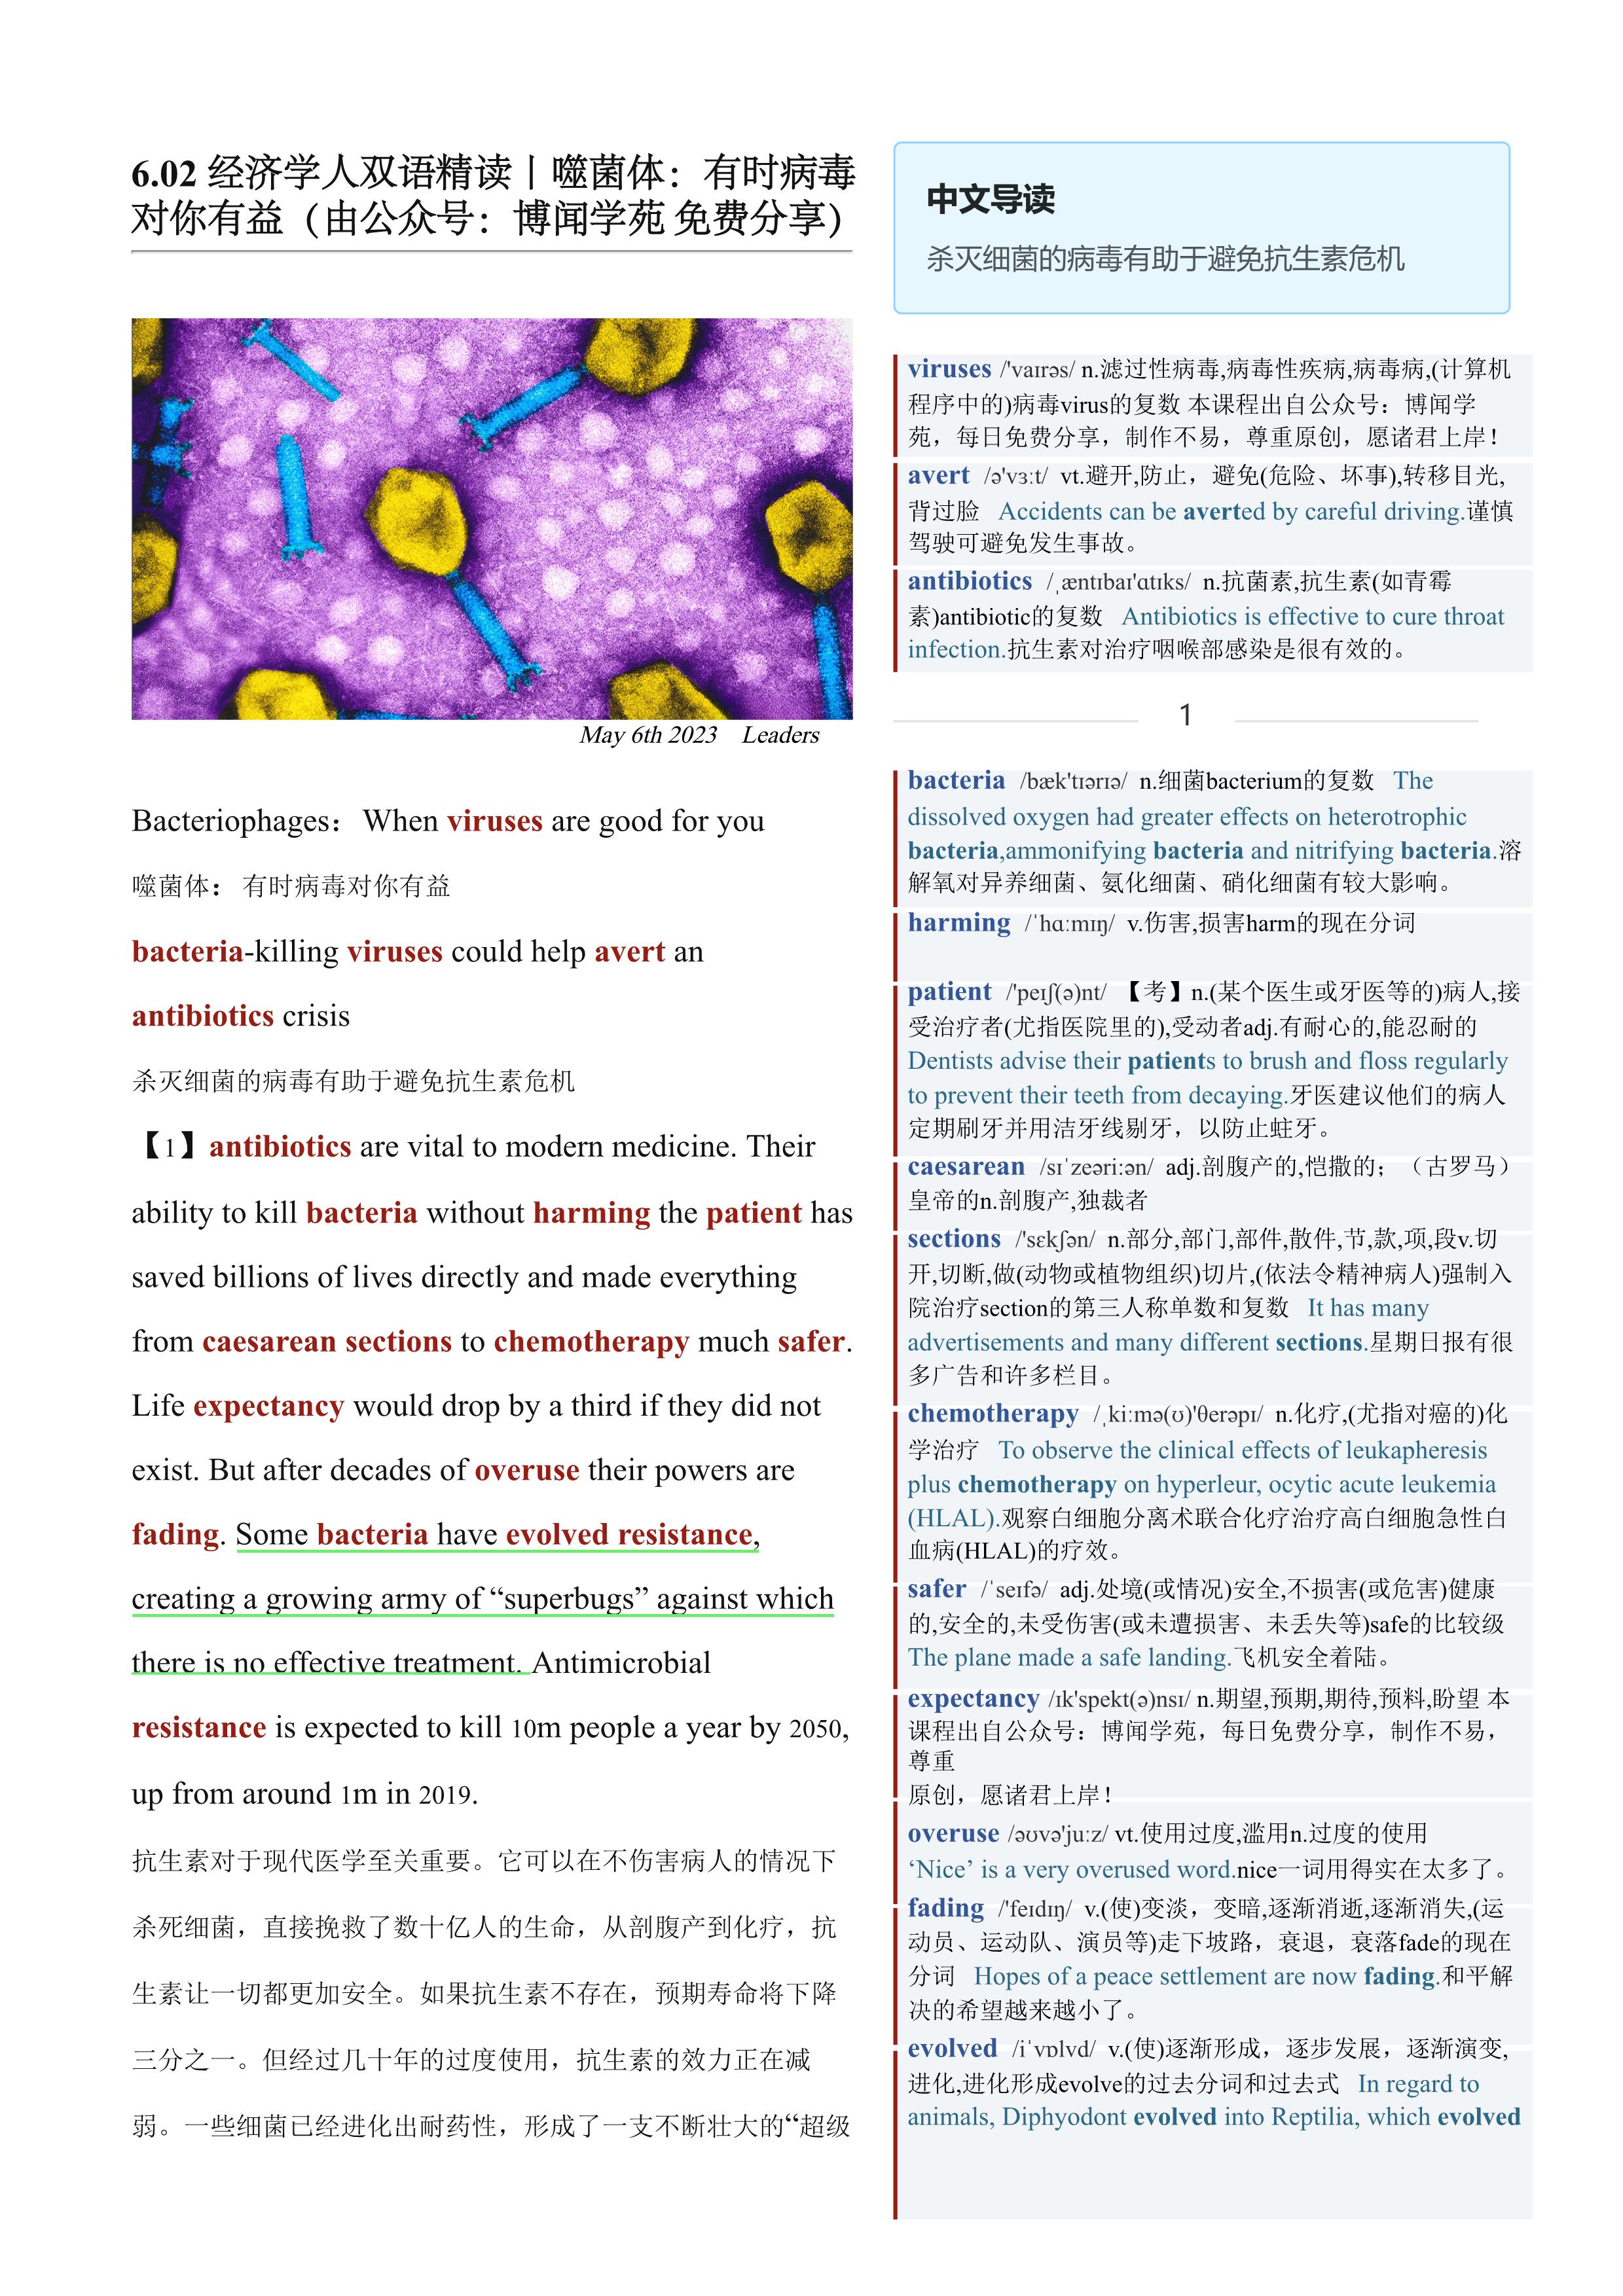 2023.06.02 经济学人双语精读丨噬菌体：有时病毒对你有益 (.PDF/DOC/MP3)